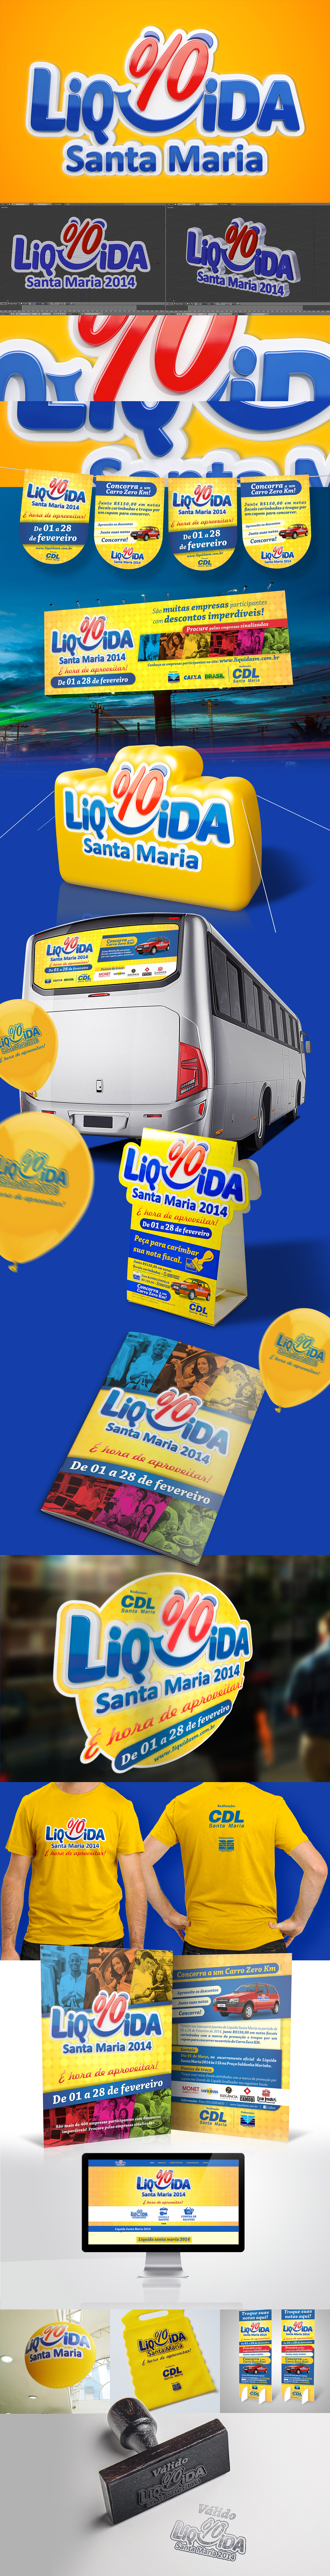 LIQUIDA SM CDLSM Liquida campaign campanha offer Promoção publicidade sale sorteio